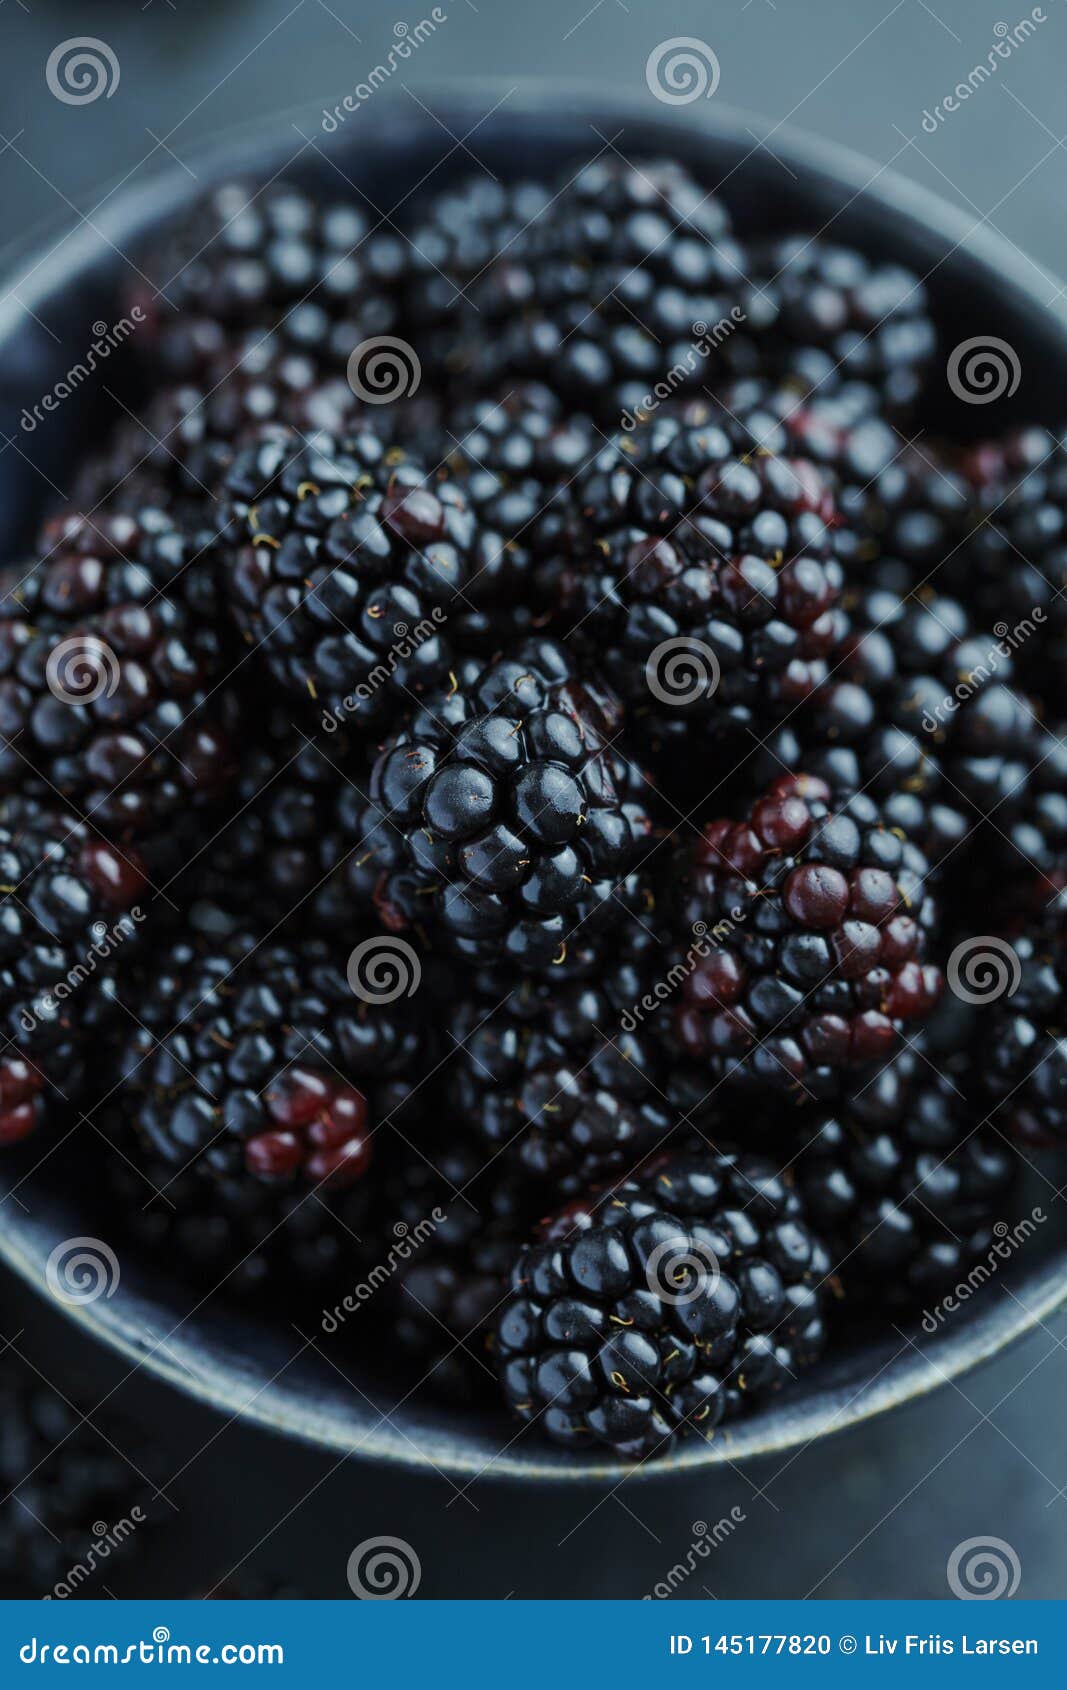 Blackberries in a bowl stock photo. Image of macro, ingredient - 145177820